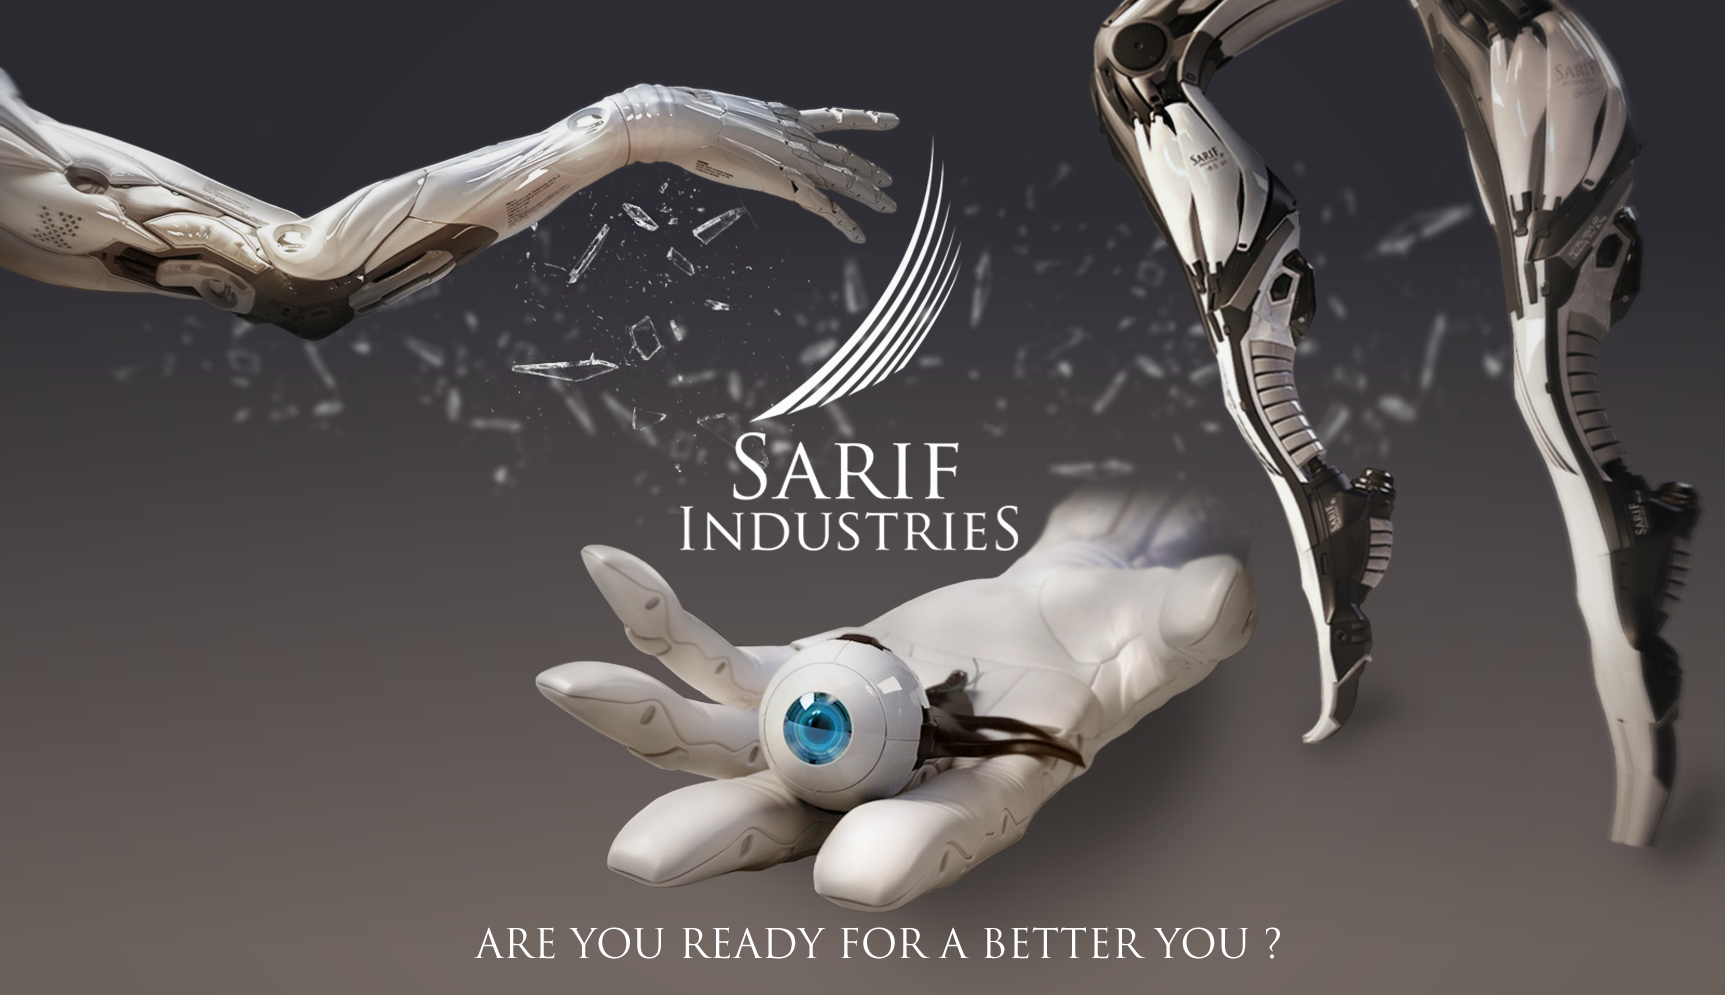 Sarif Industries